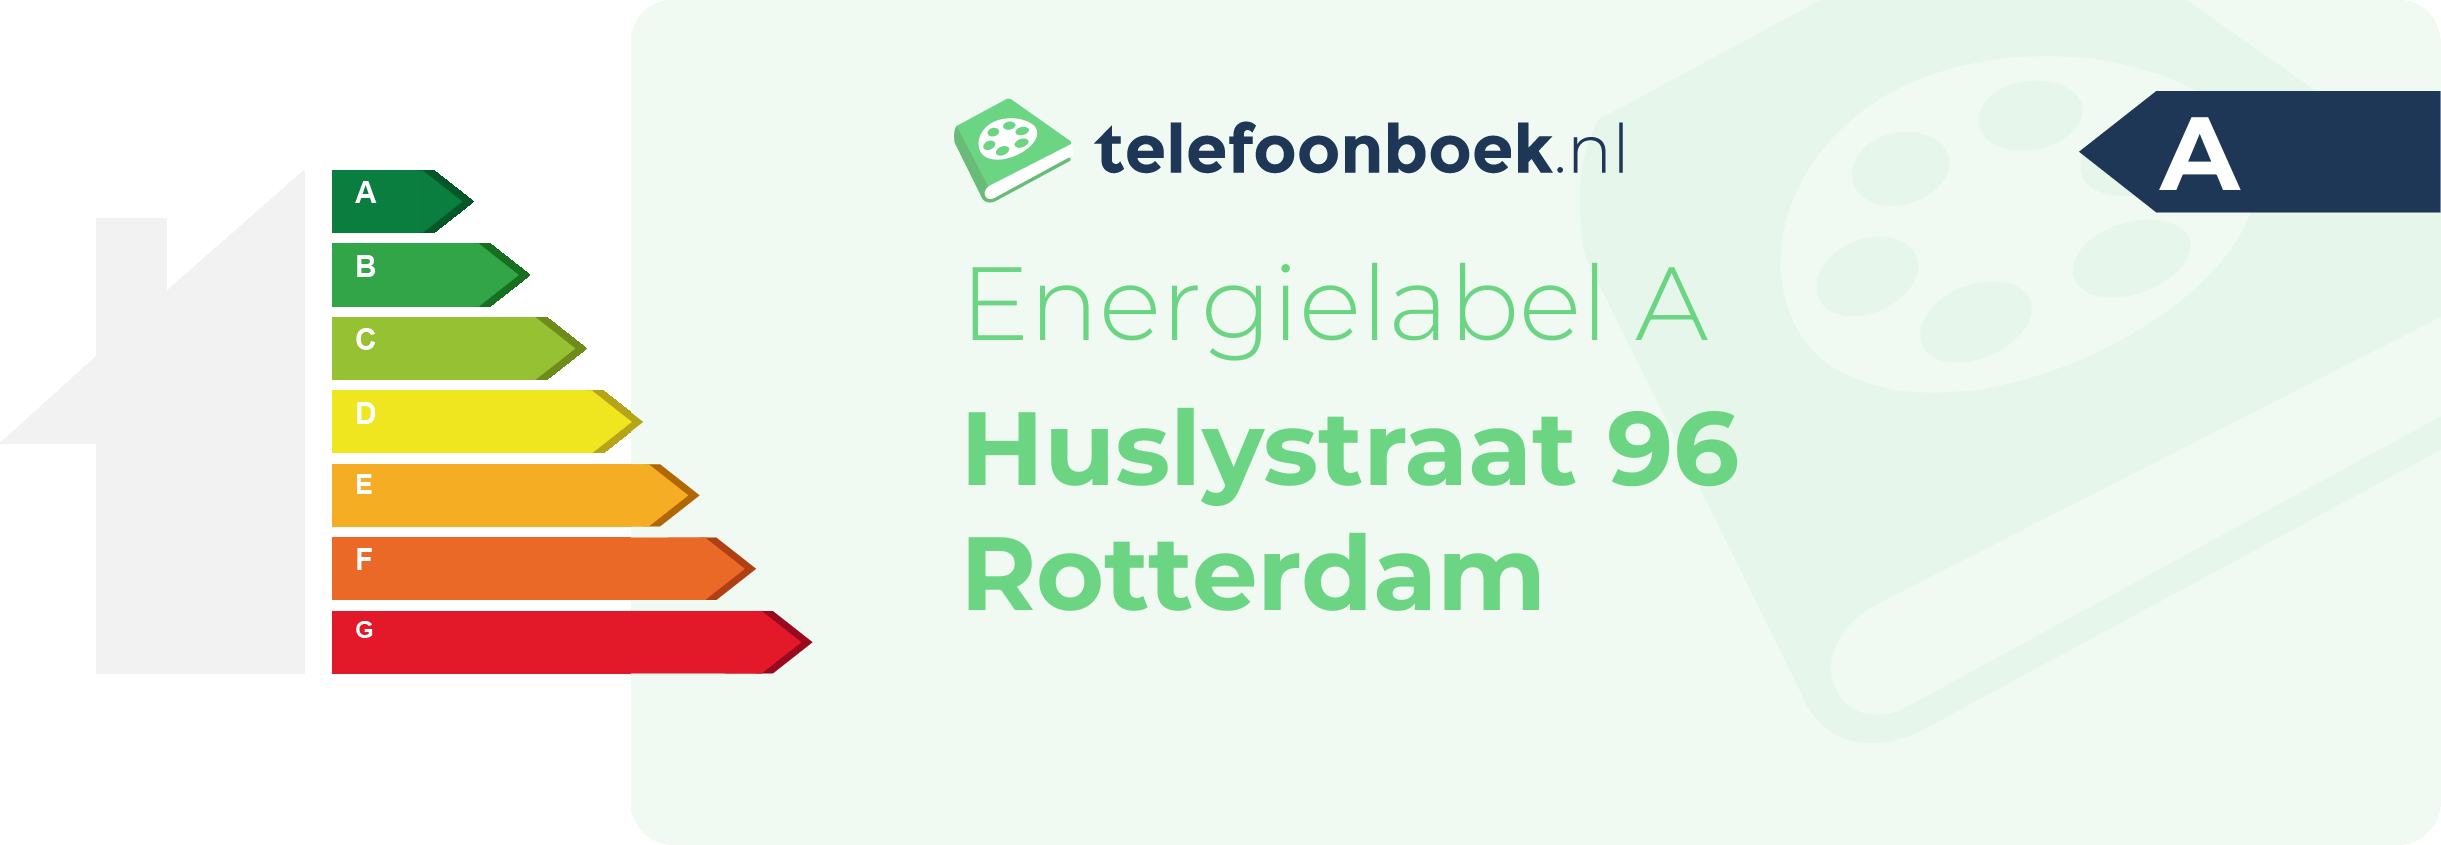 Energielabel Huslystraat 96 Rotterdam